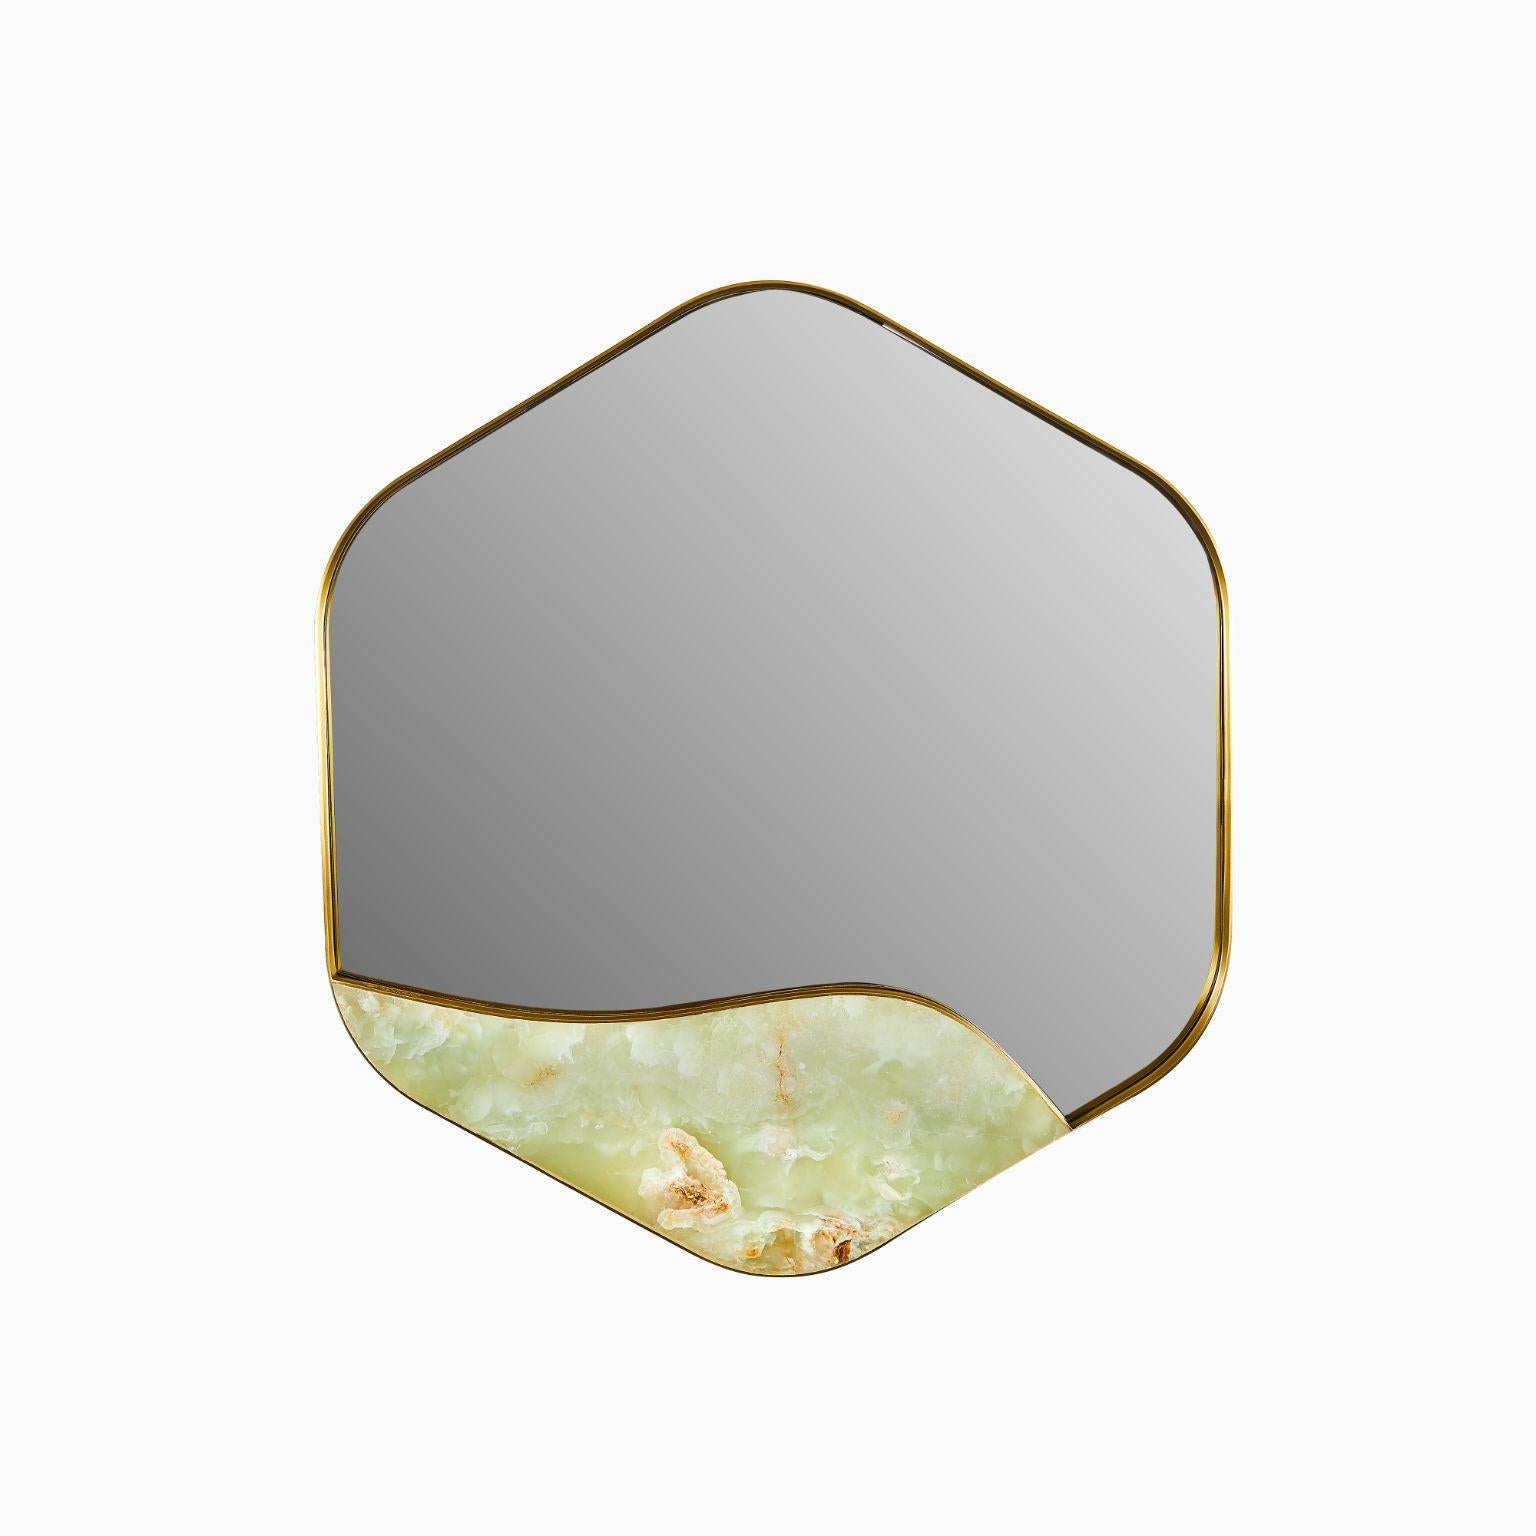 Miroir Aras vert onyx par Marble Balloon
Dimensions : L 5cm x L 83.5cm x H 76.5cm
MATERIAL : Laiton, pierre verte onyx.

Le cadre est en laiton à 100 % et la partie inférieure est en onyx vert.

Marble balloon est une marque de décoration